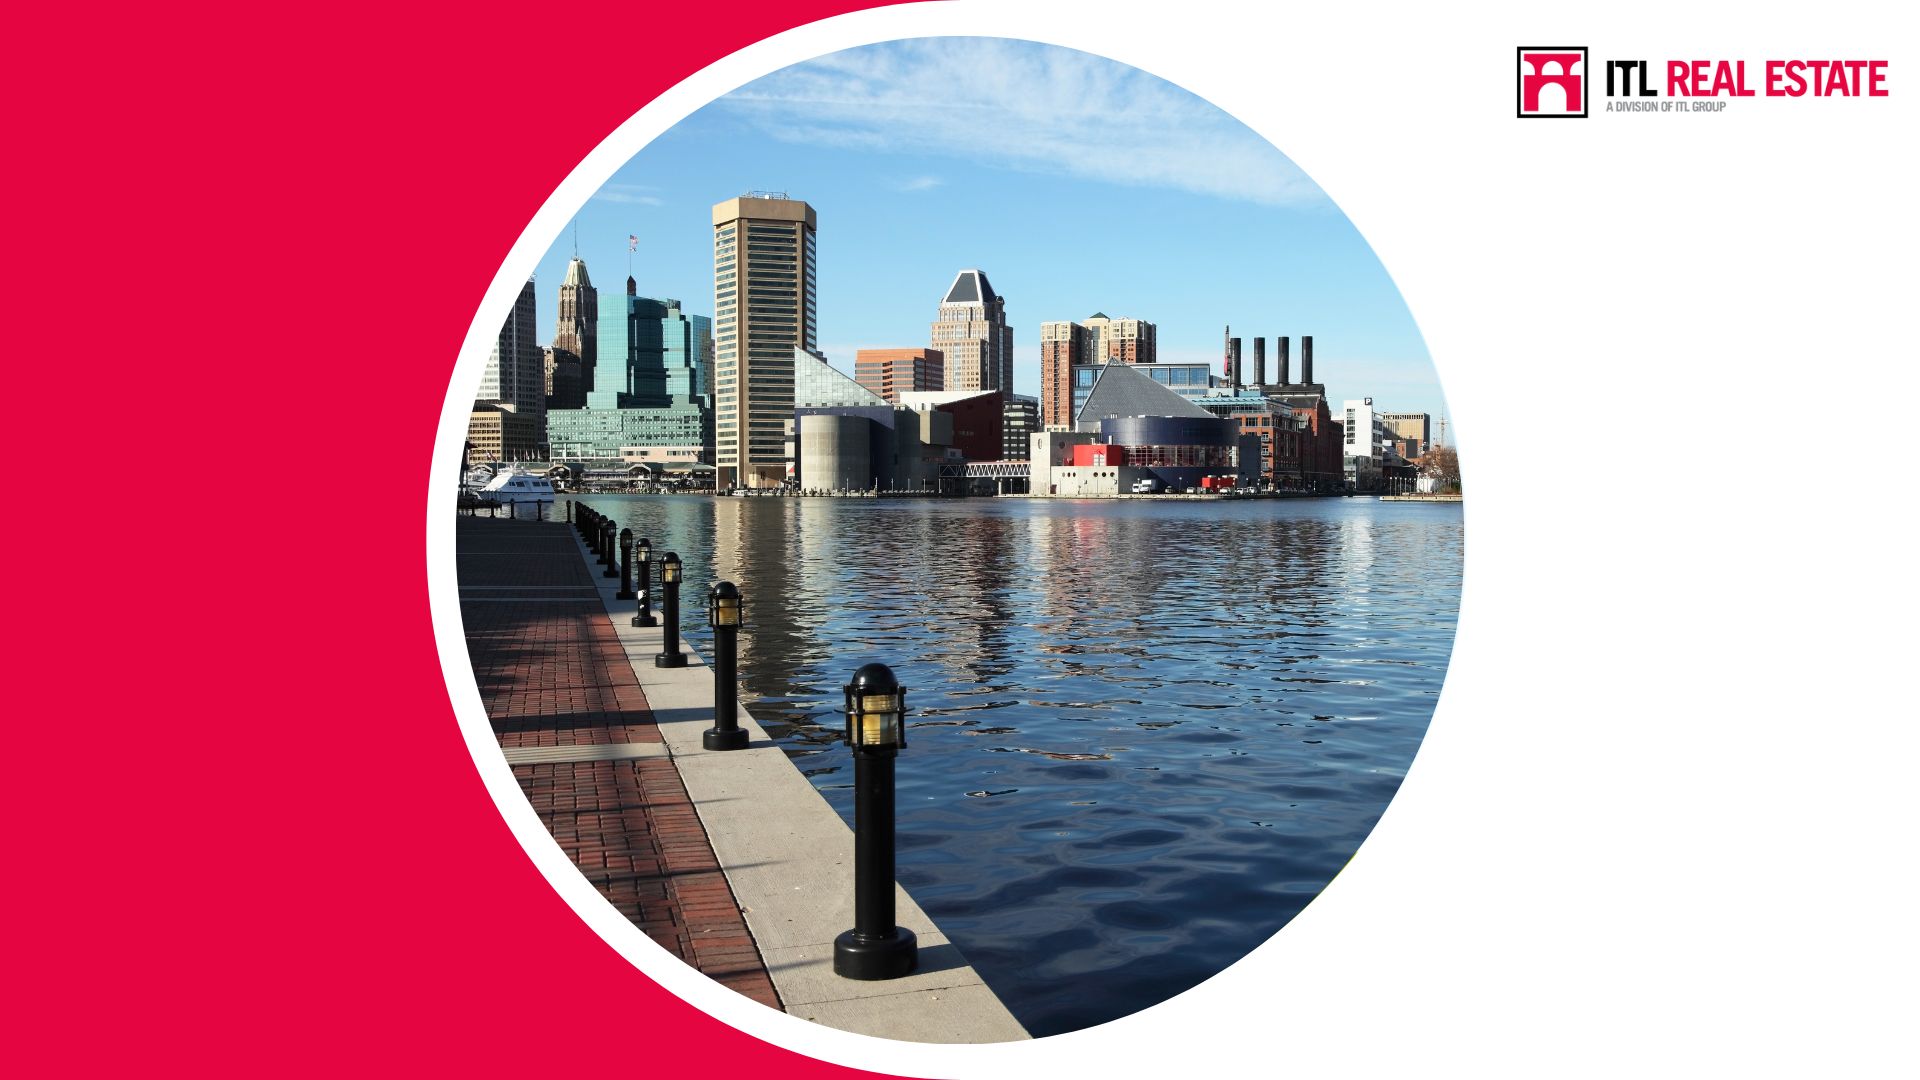 Baltimore è Il Mercato N. 1 In Tutti Gli Stati Uniti Per I Rendimenti Locativi Ed è Stata Inserita Nella Lista Dei Centri Emergenti Per Lo Sviluppo Di Nuove Tecnologie.